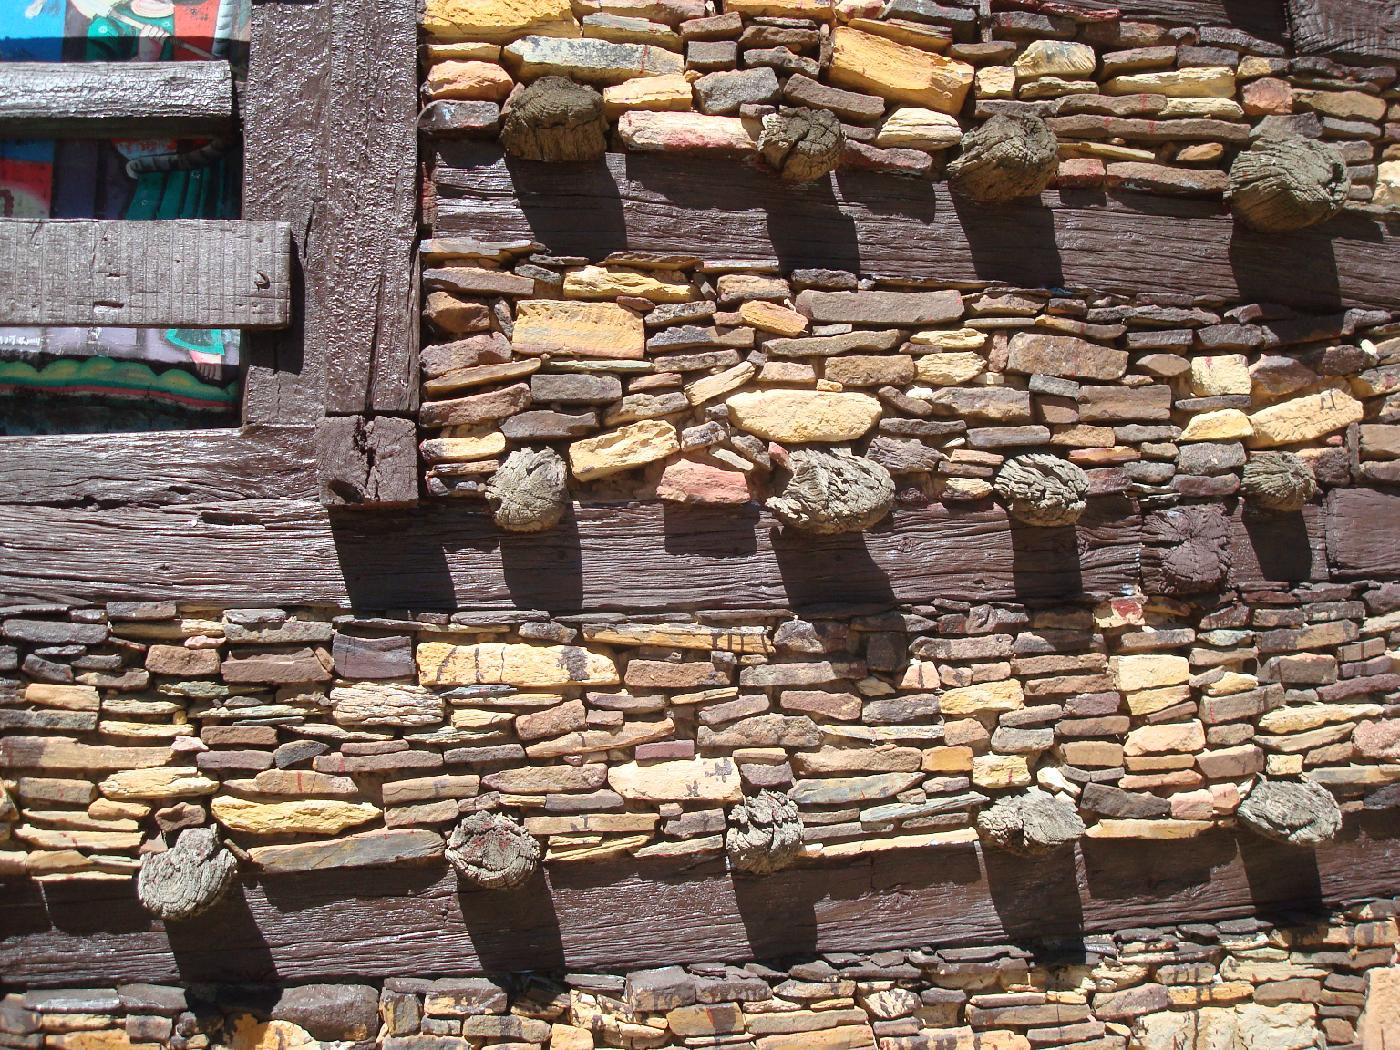 DSC031305.jpg - Lglise de Debr Damo est construite de pierre, dargile et de bois